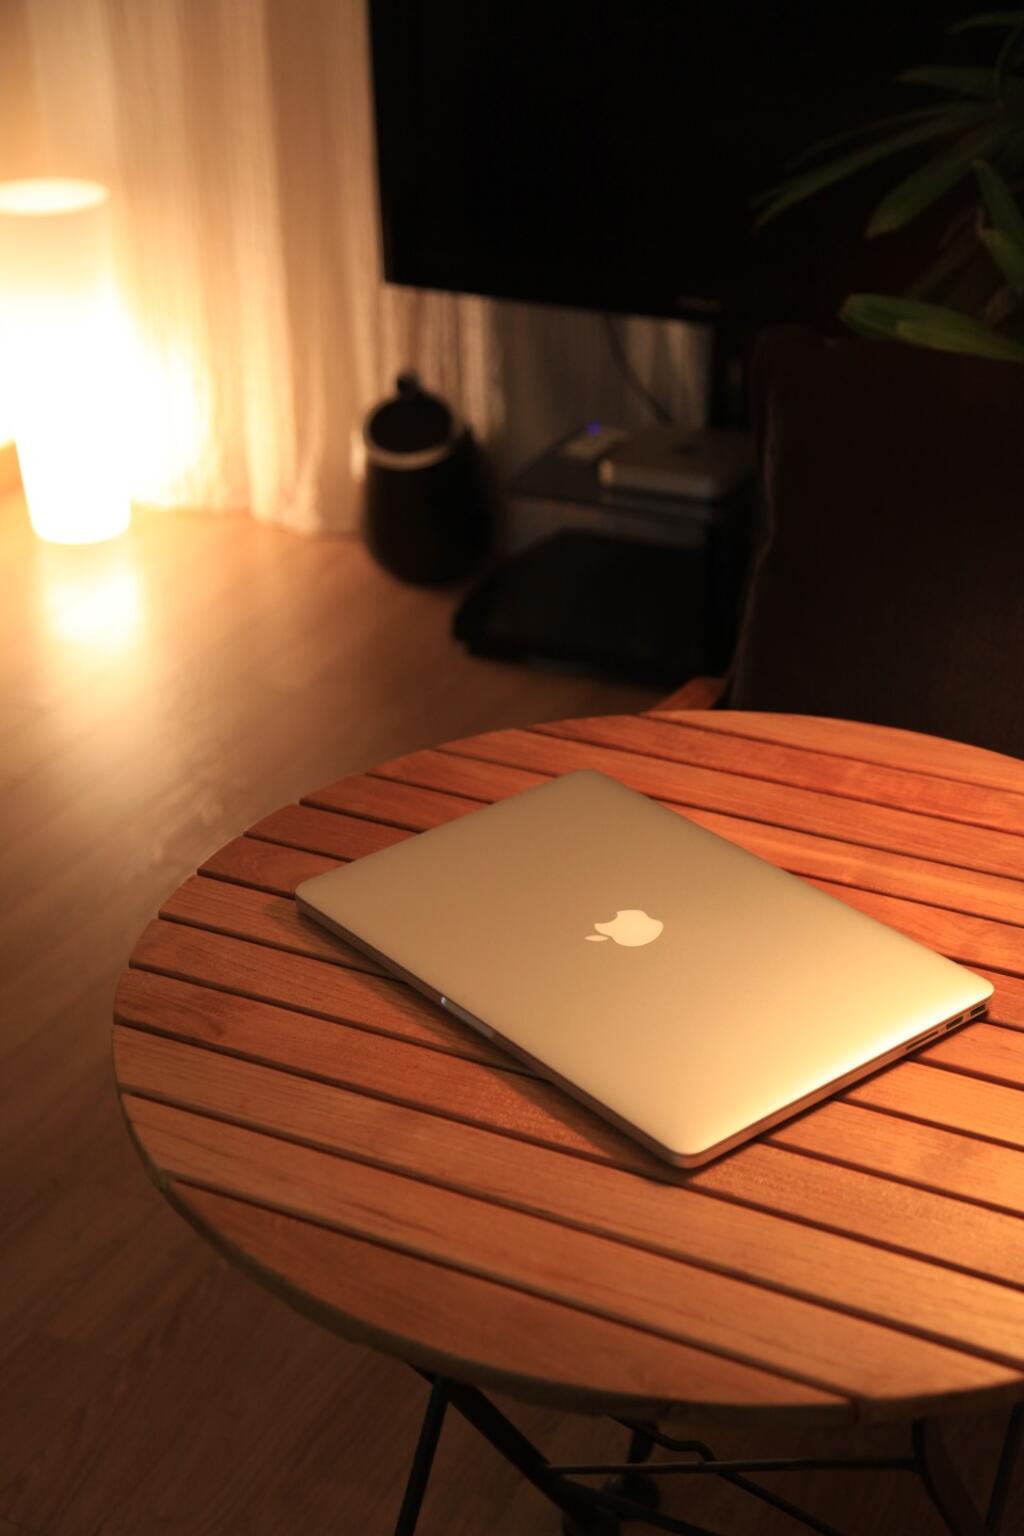 MacBook Pro 2014